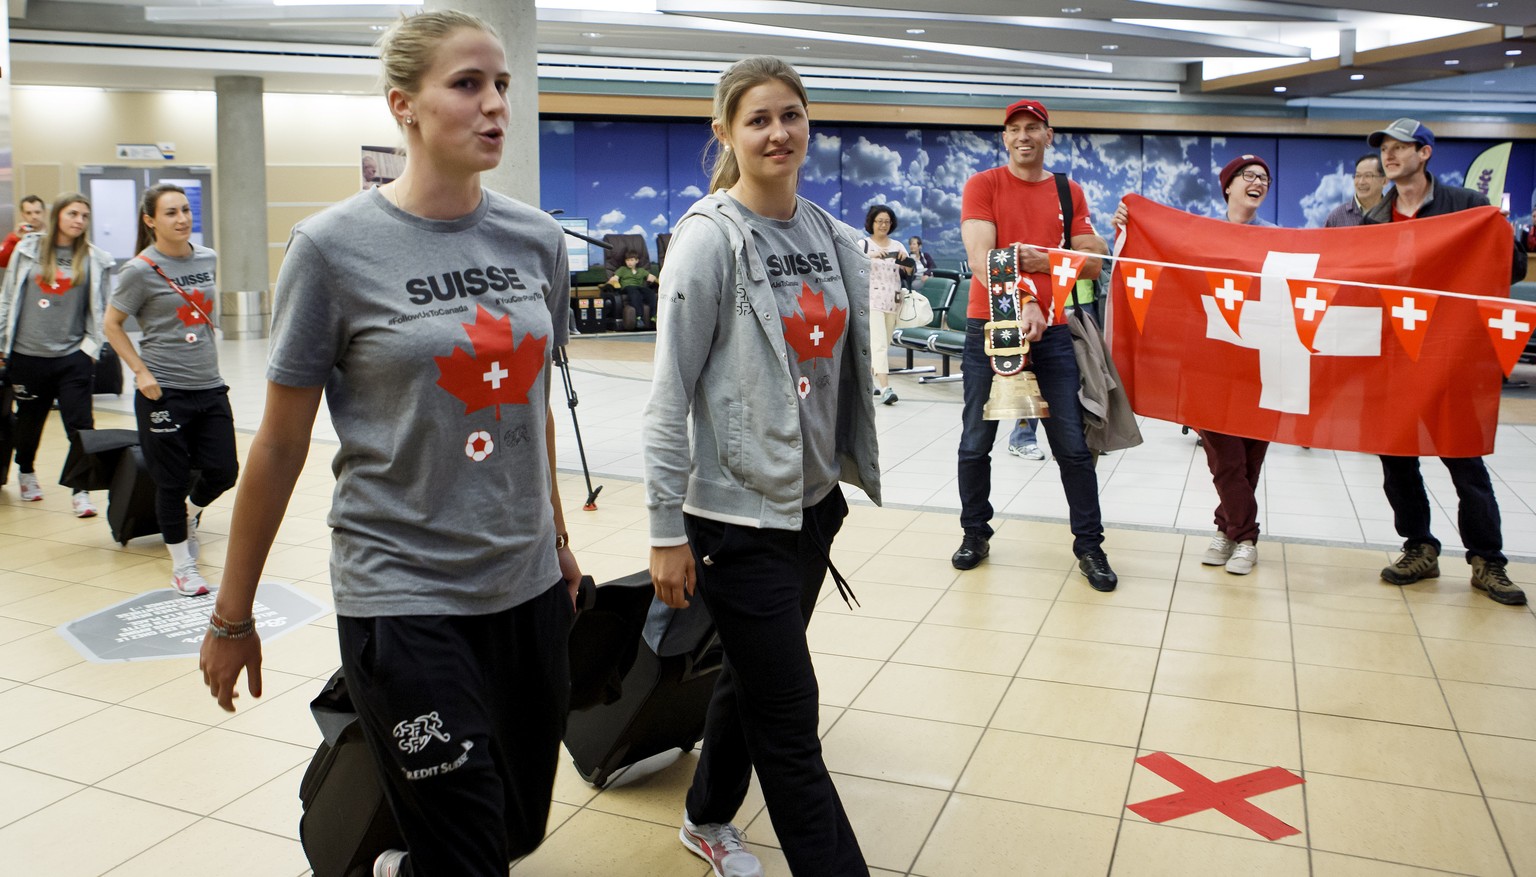 Am Flughafen in Edmonton haben sich sogar einige Schweizer Fans eingefunden.